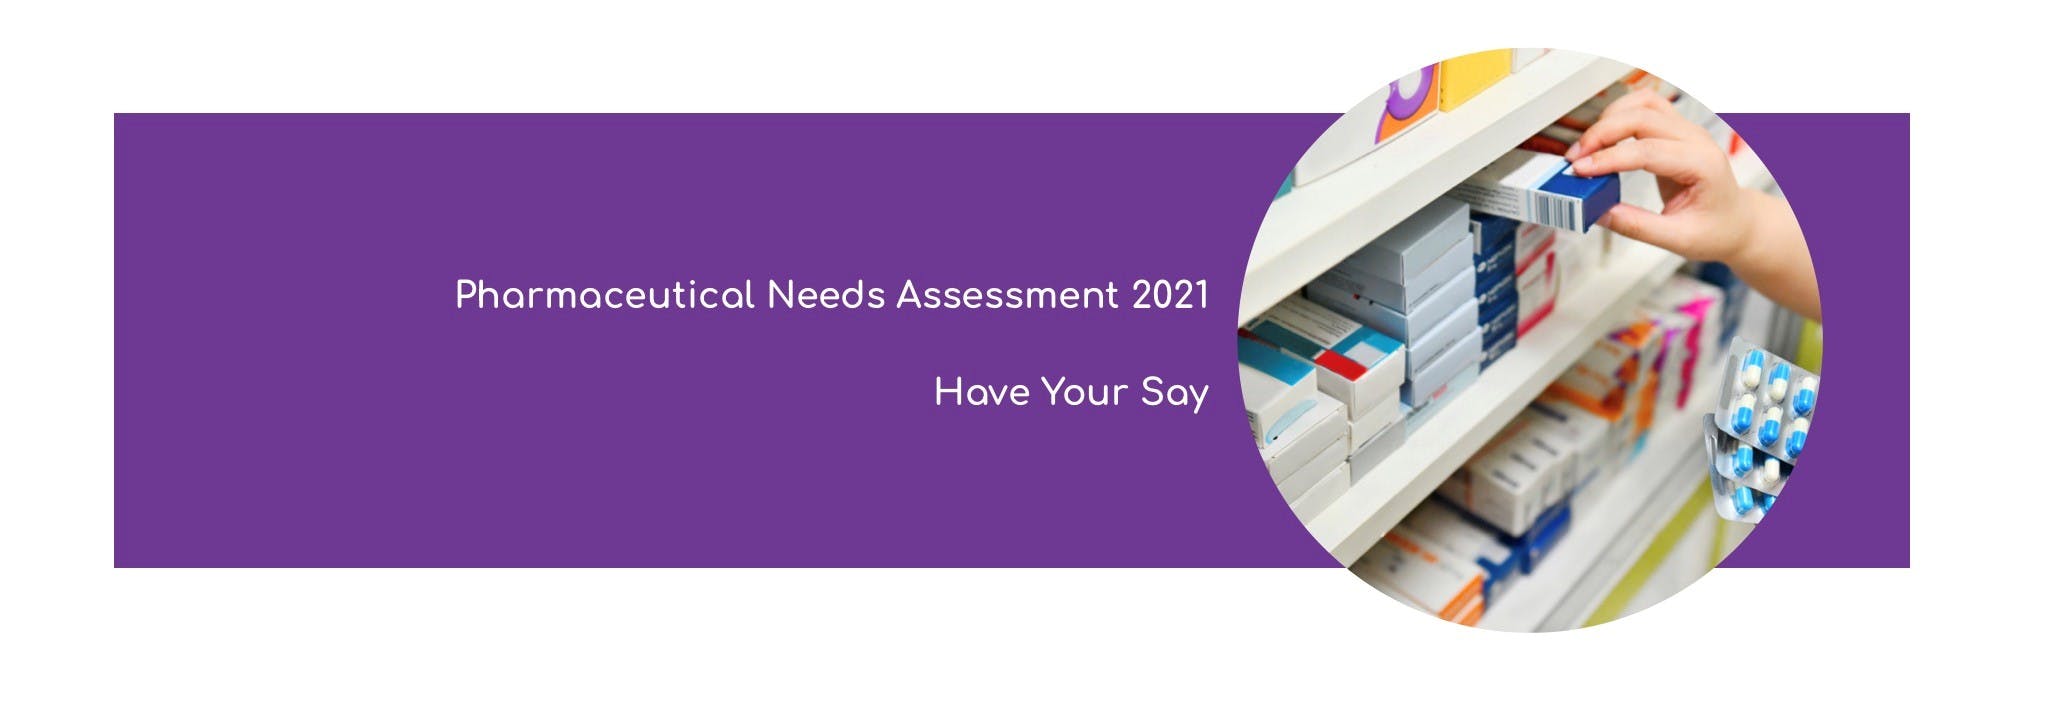 Banner image for pharmaceutical needs assessment 2021